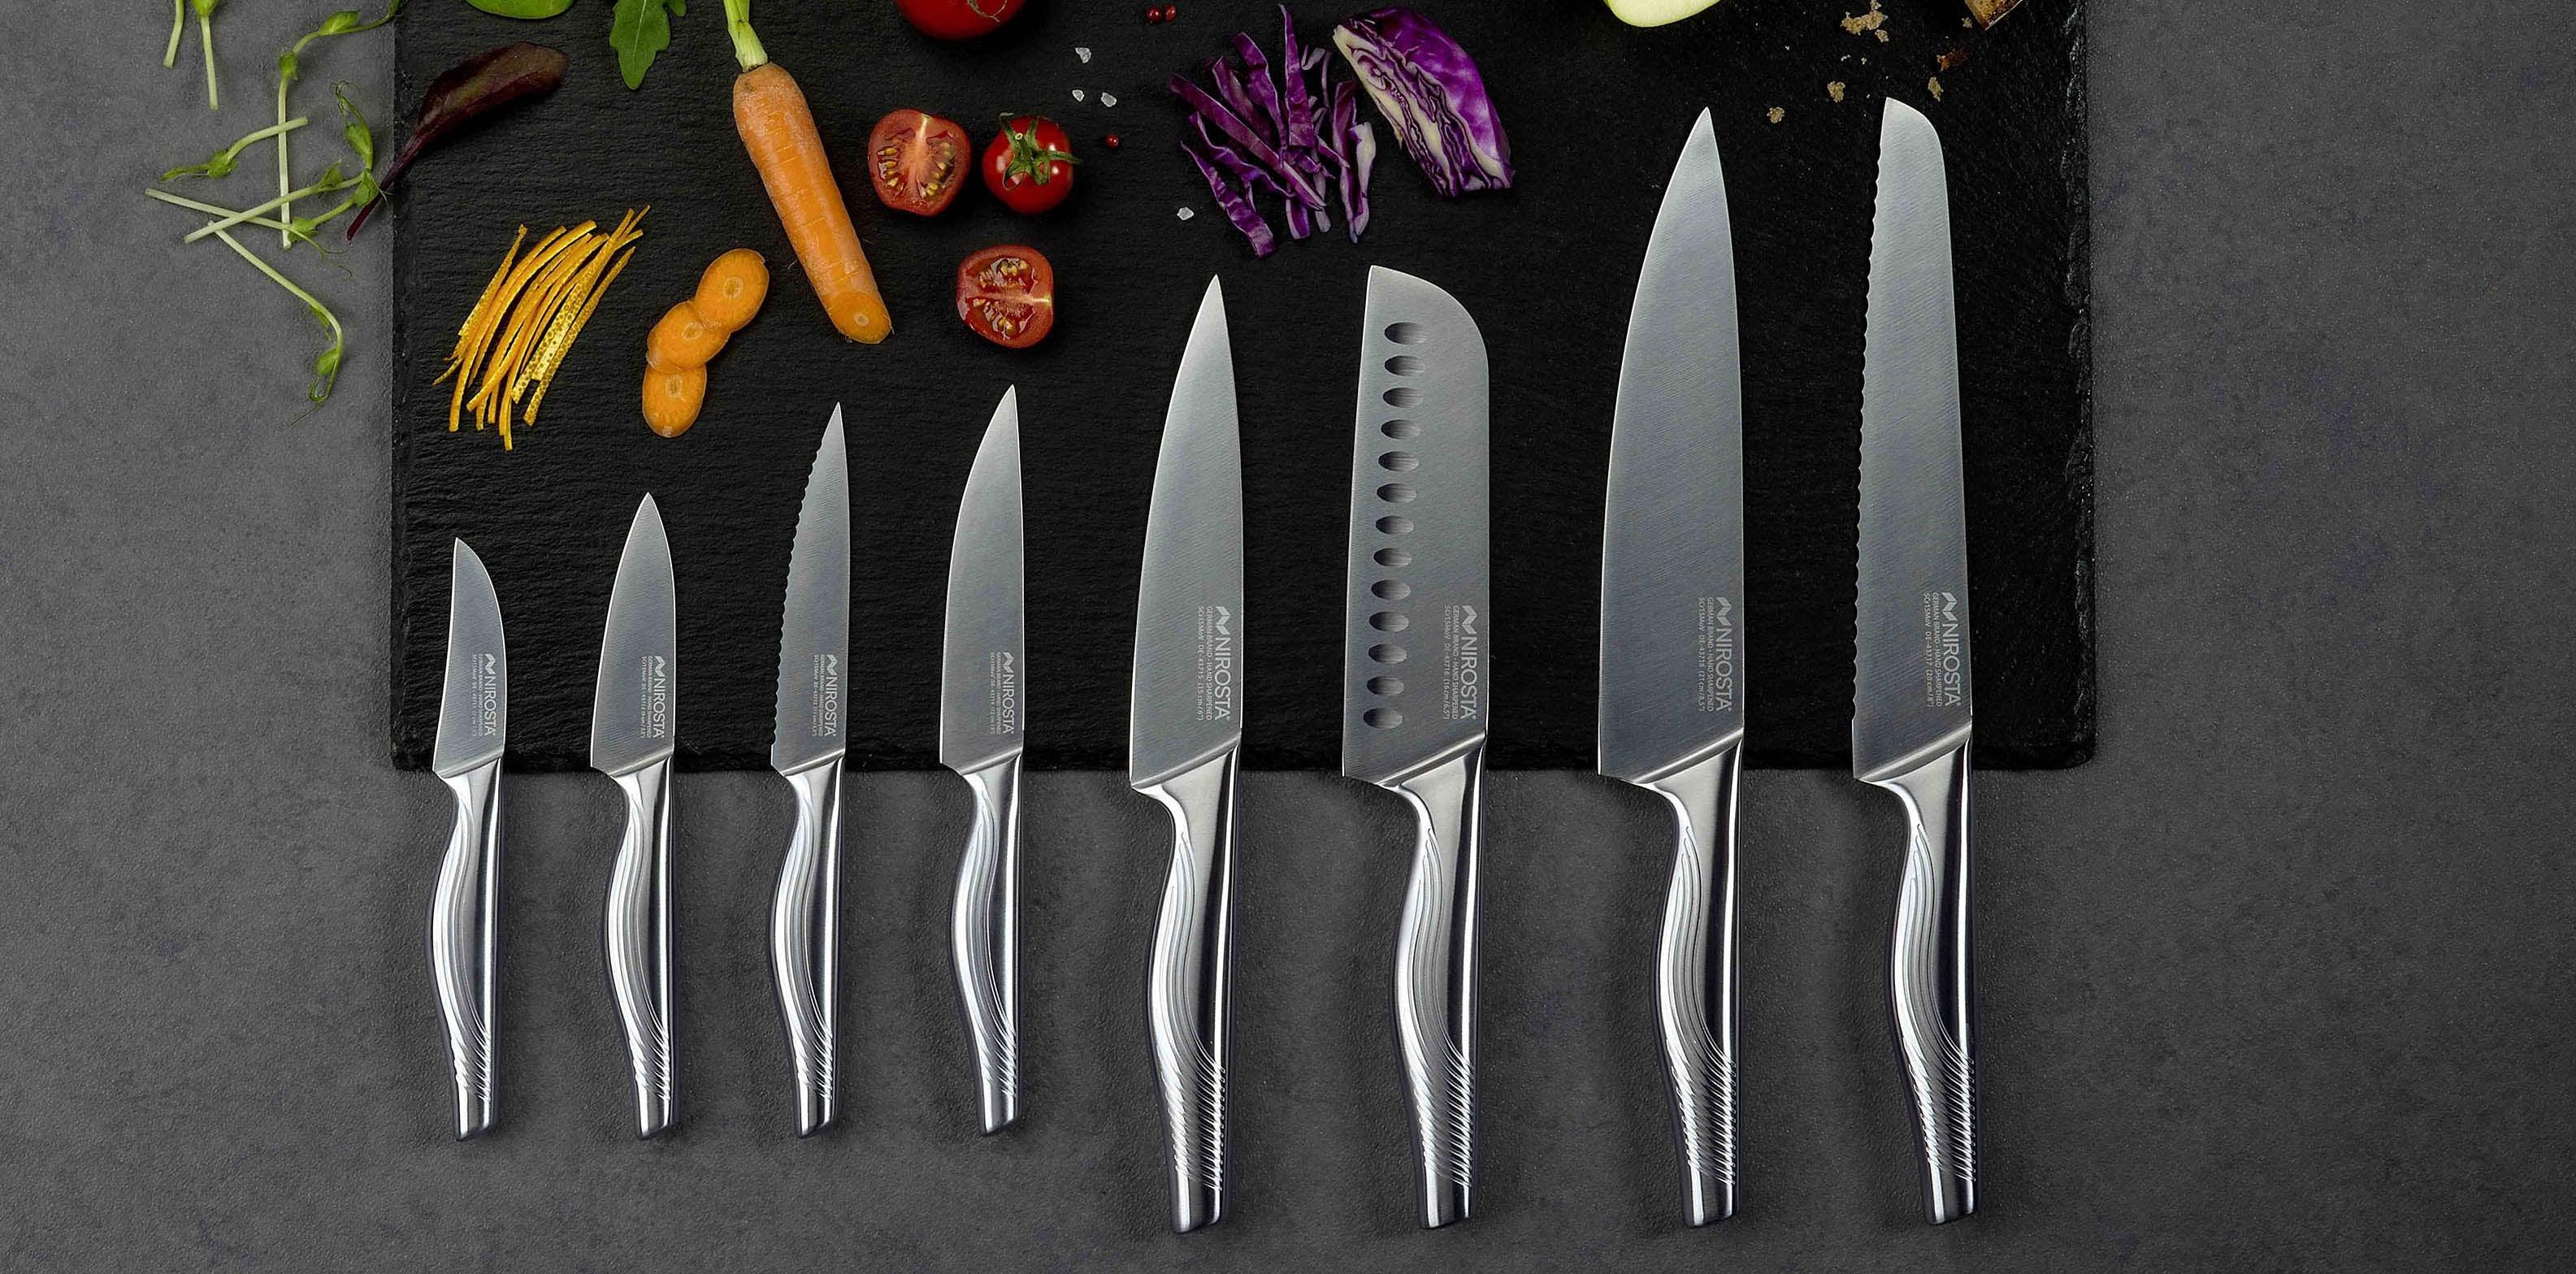 ShenMo Ensemble de 3 couteaux de cuisine en plastique, couteau de chef,  couteau de cuisine de sécurité pour la pâtisserie, fruits, pain, gâteau,  couteau à laitue, couteau à salade 